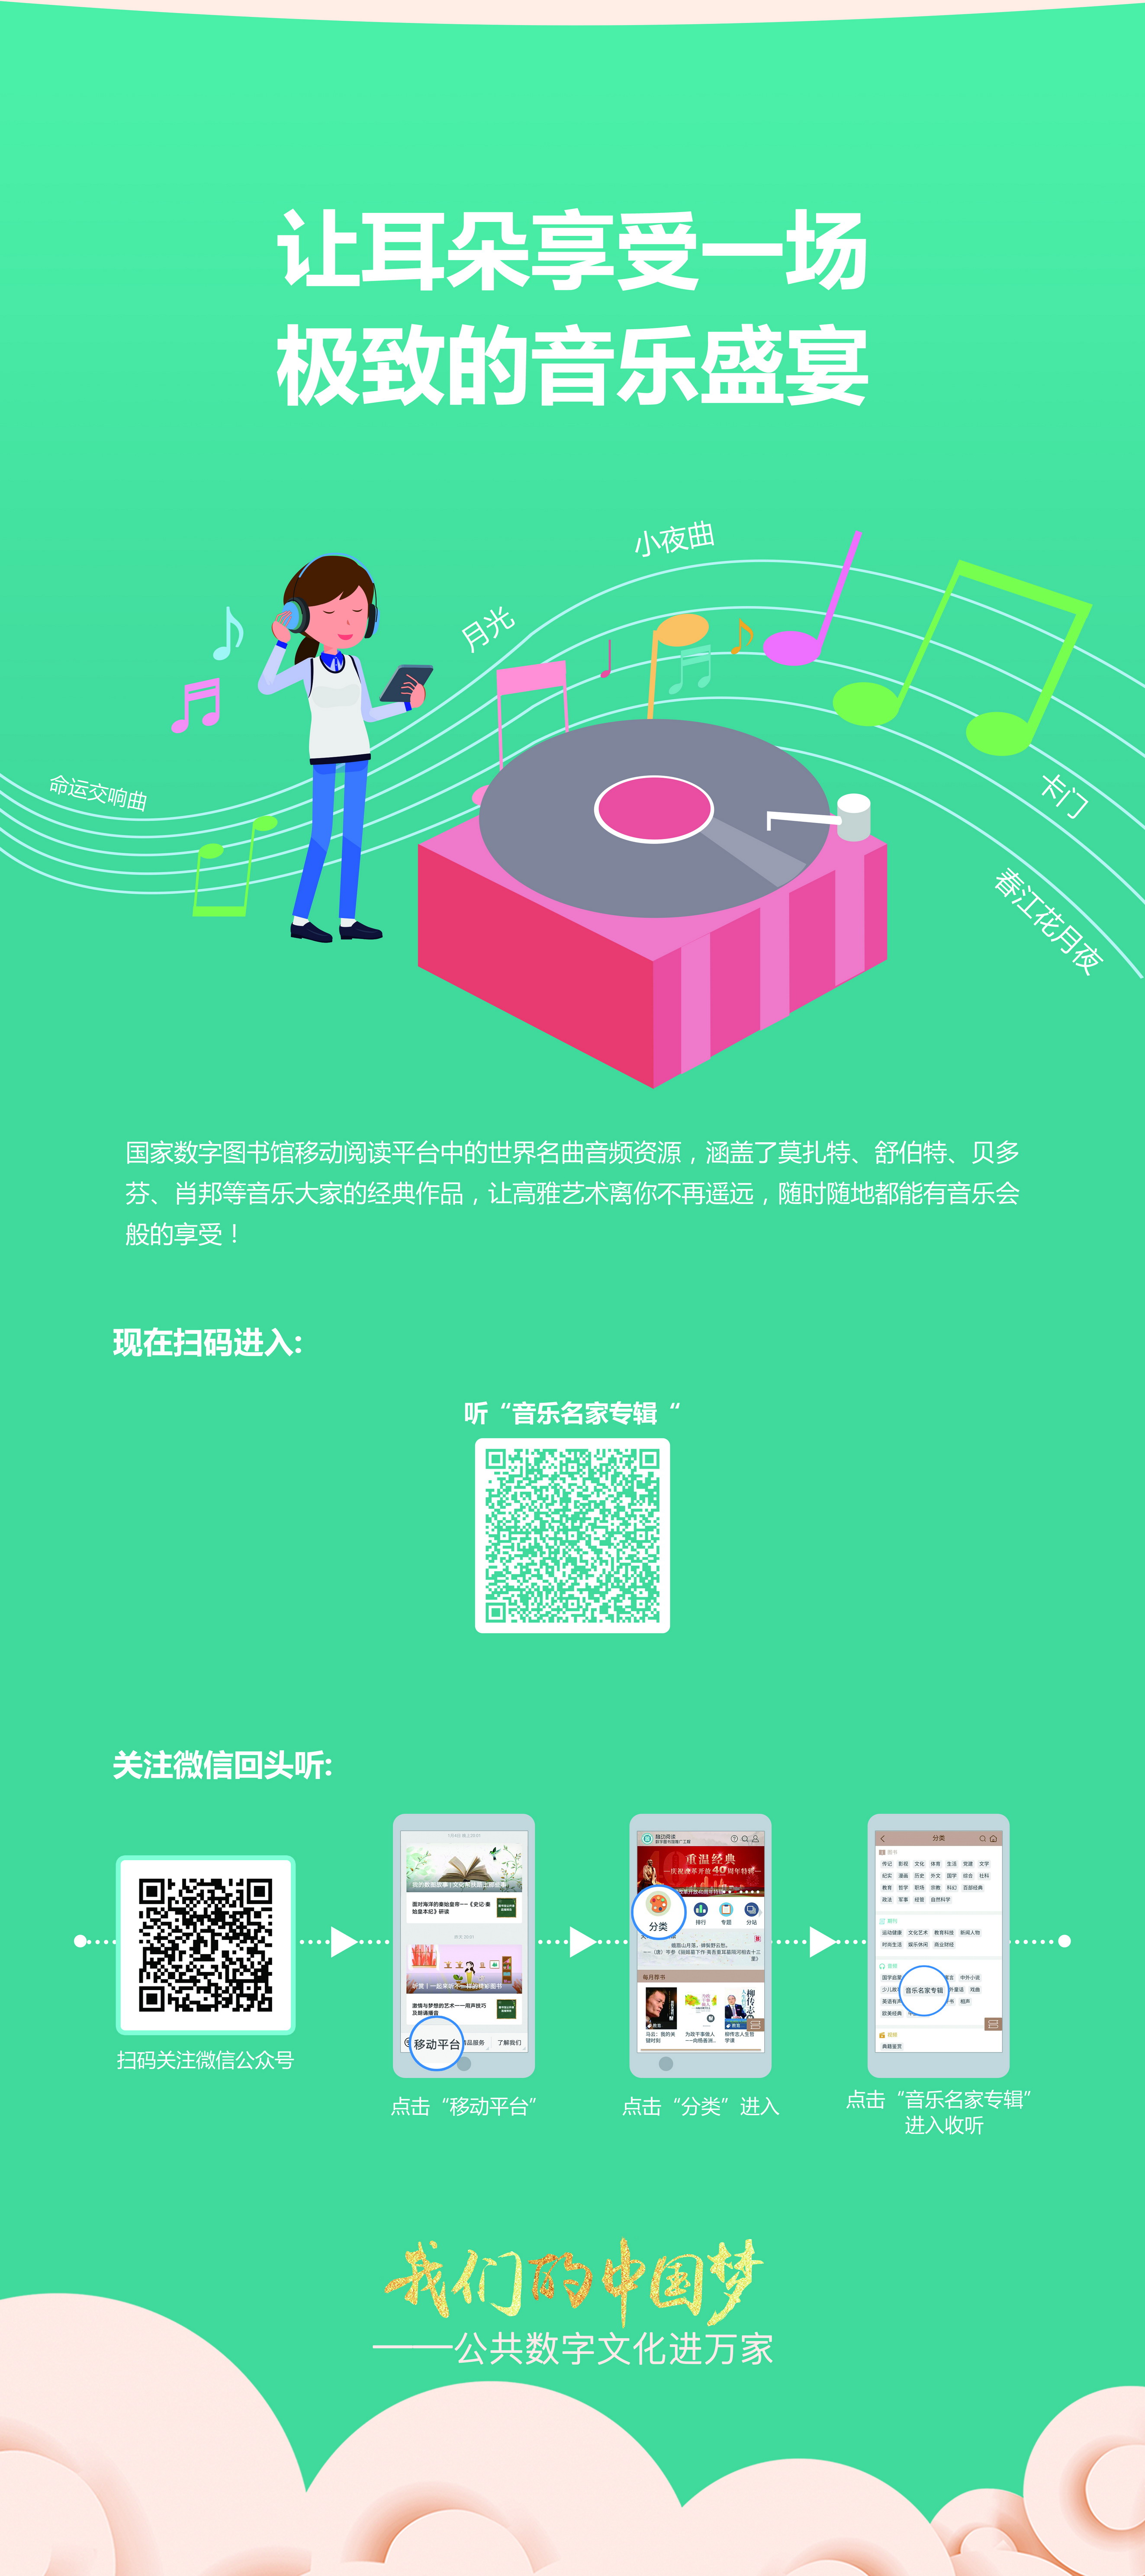 我们的中国梦——公共数字文化进万家活动线下主题展览_图6